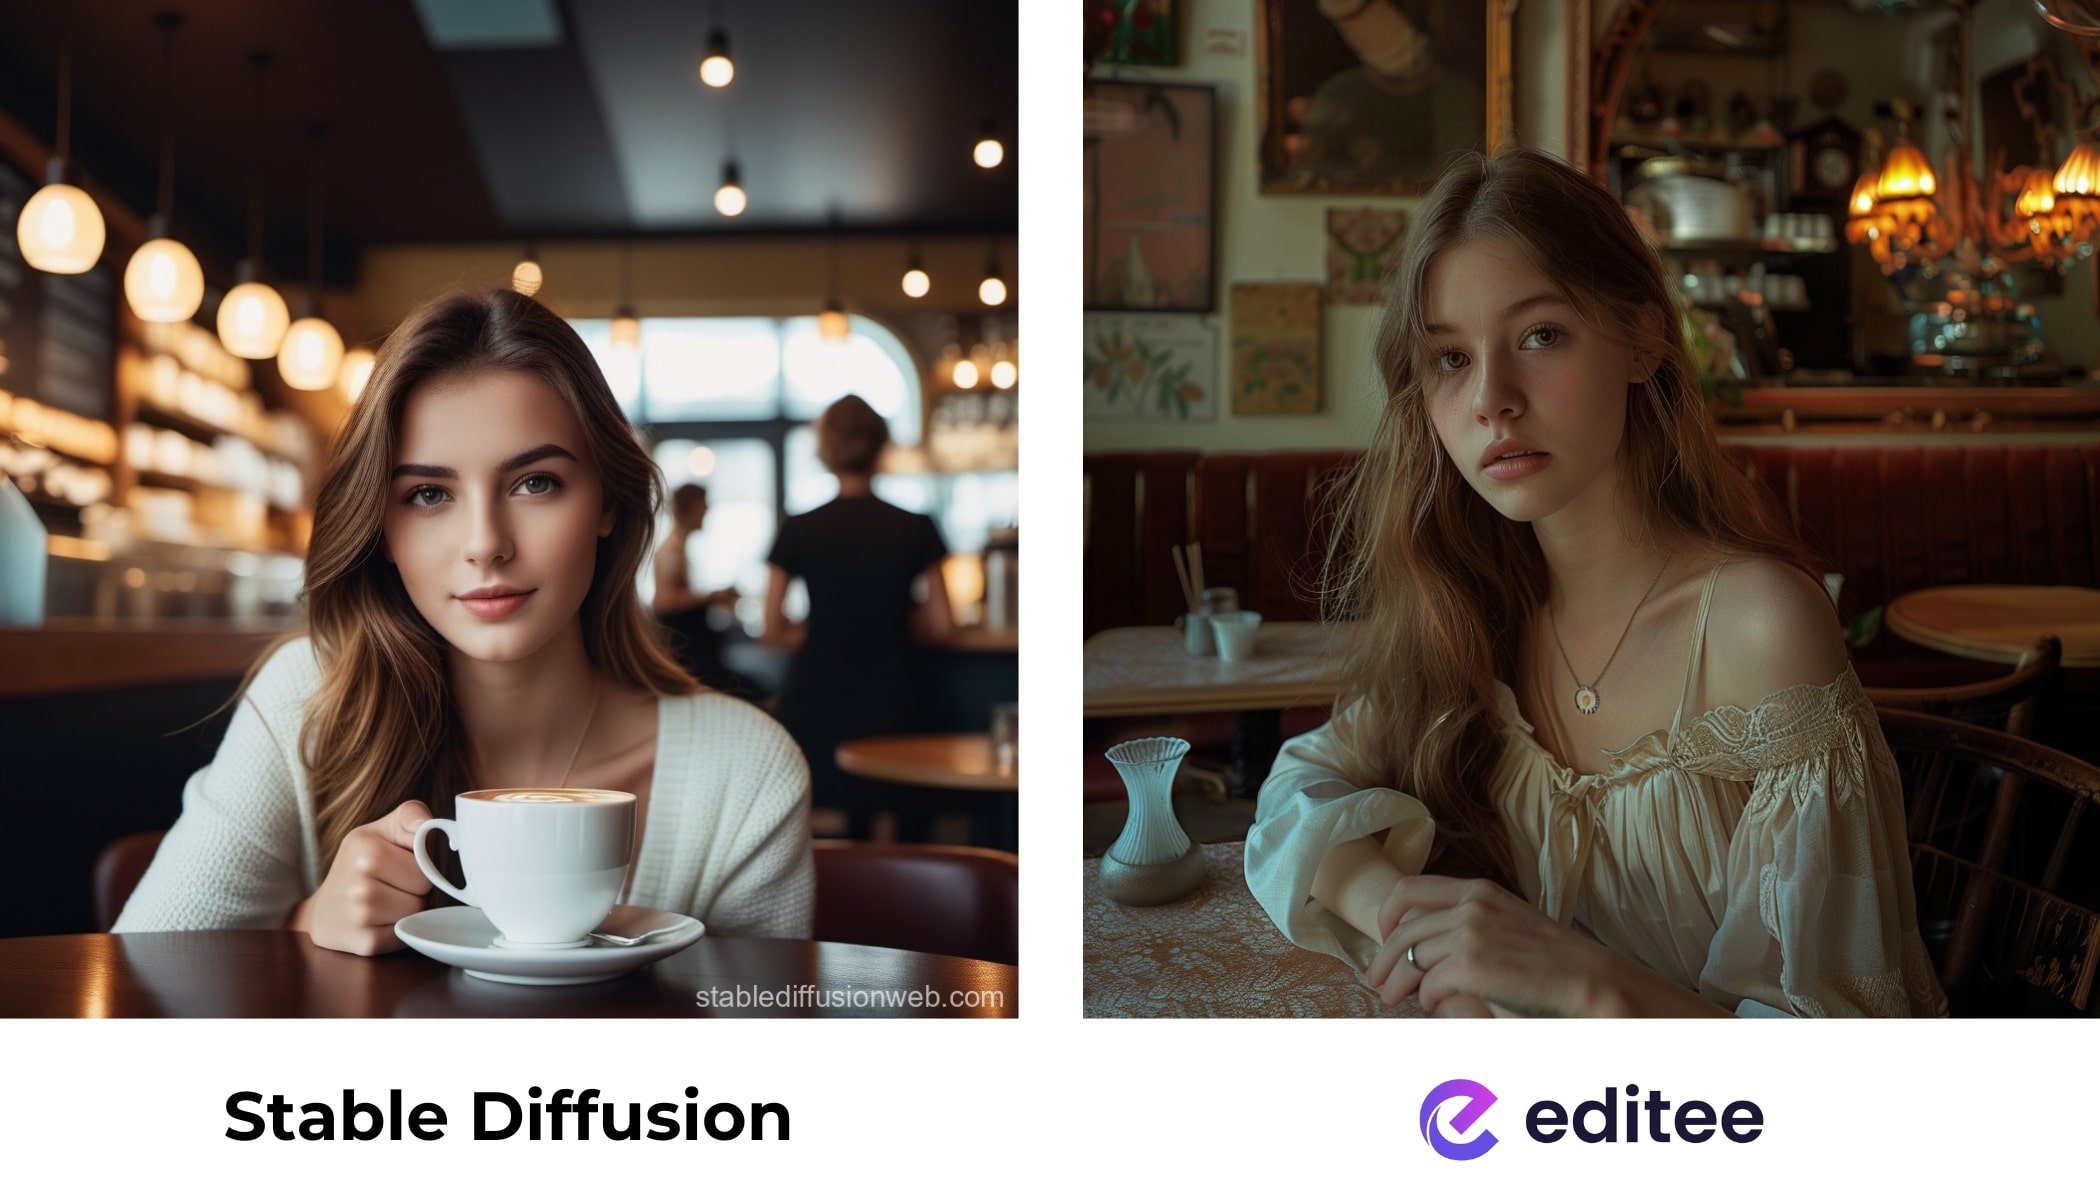 žena v kavárně - srovnání obrázků vytvořených přes stable diffusion a editee